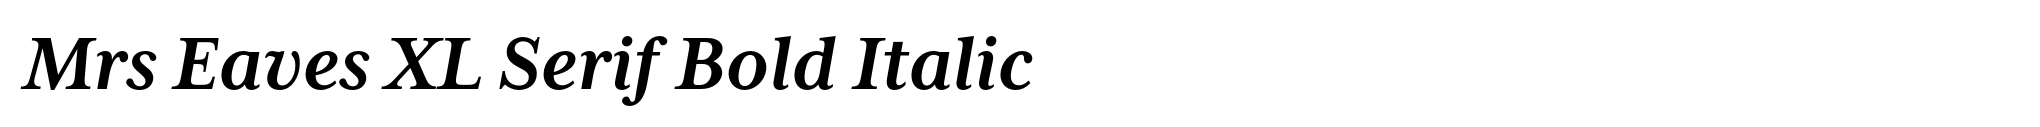 Mrs Eaves XL Serif Bold Italic image